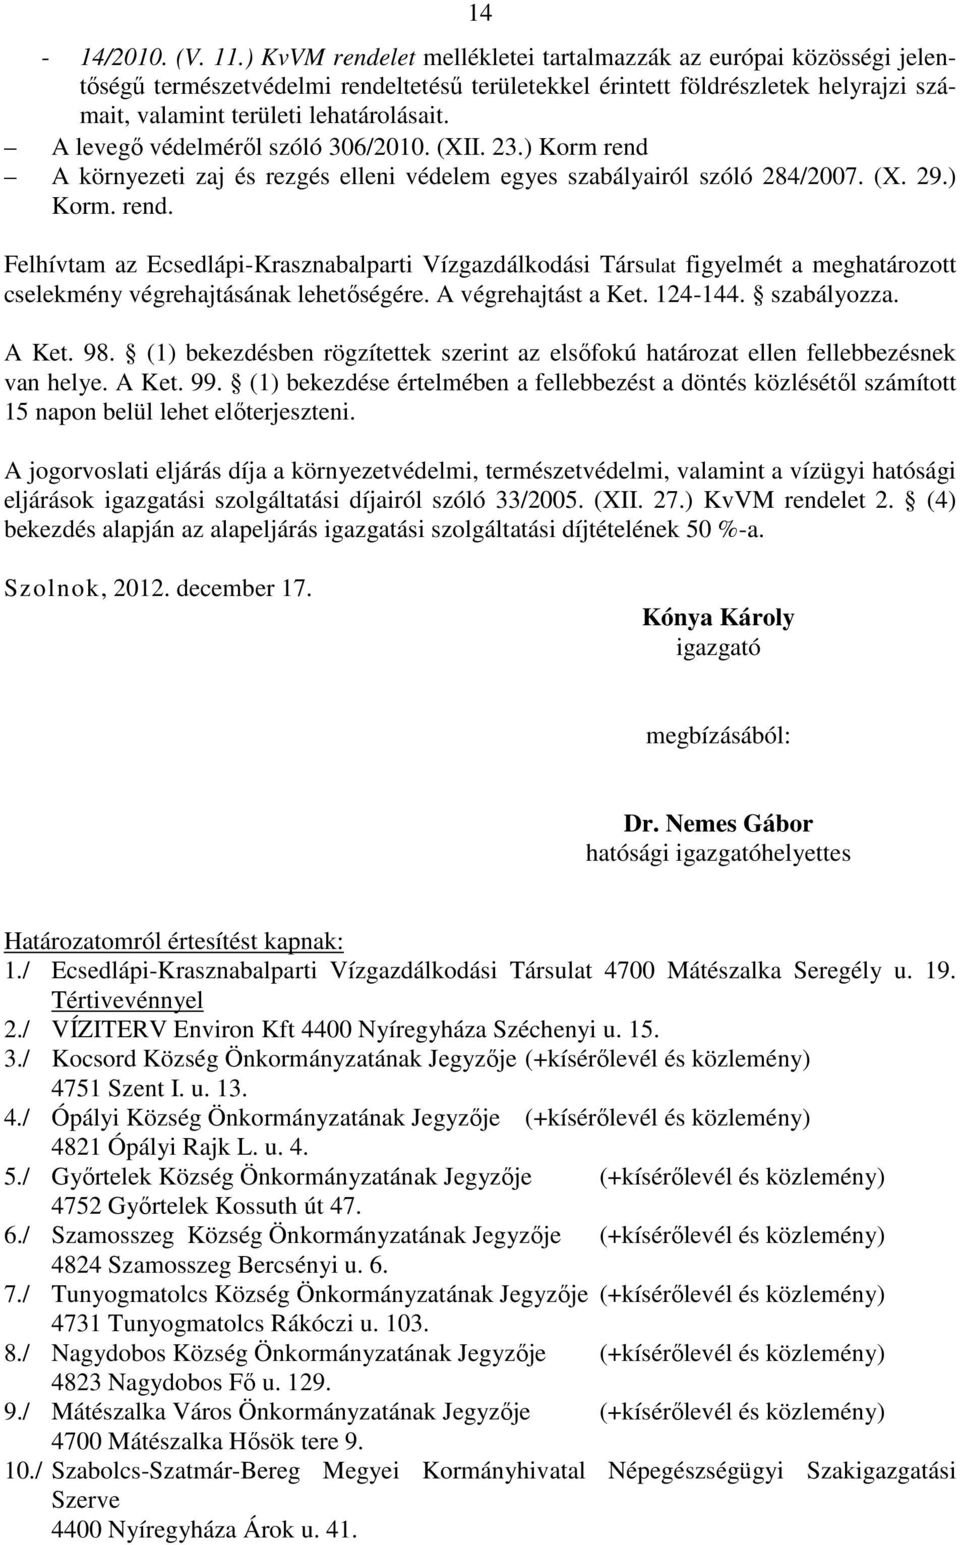 A levegő védelméről szóló 306/2010. (XII. 23.) Korm rend A környezeti zaj és rezgés elleni védelem egyes szabályairól szóló 284/2007. (X. 29.) Korm. rend. Felhívtam az Ecsedlápi-Krasznabalparti Vízgazdálkodási Társulat figyelmét a meghatározott cselekmény végrehajtásának lehetőségére.